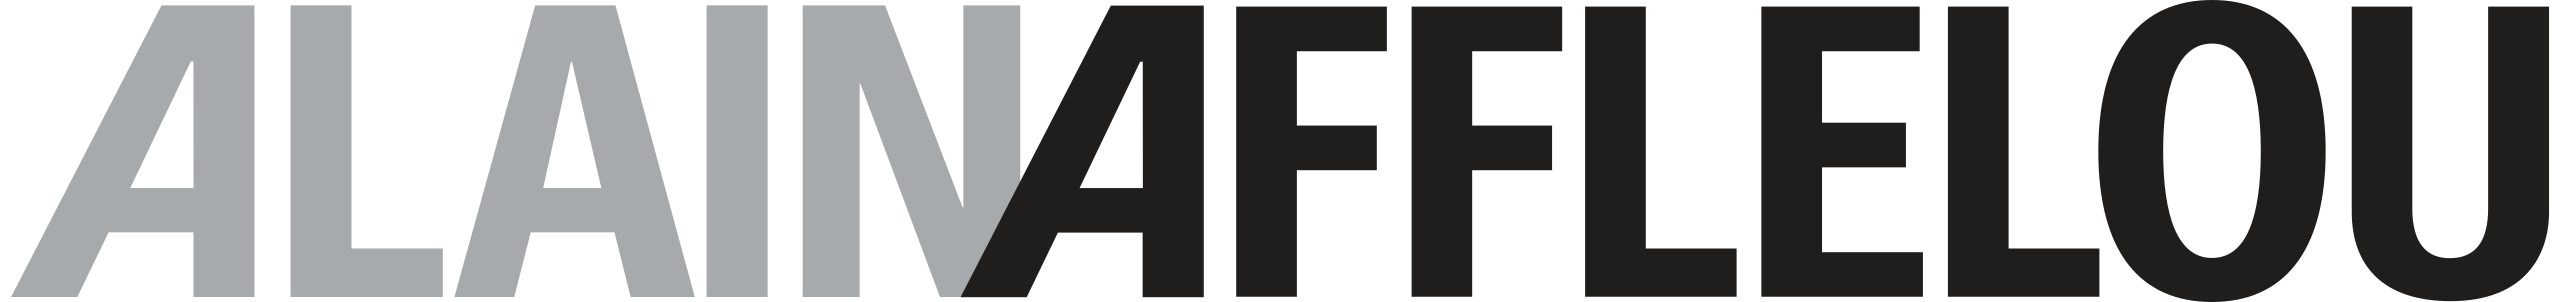 Logo client Afflelou